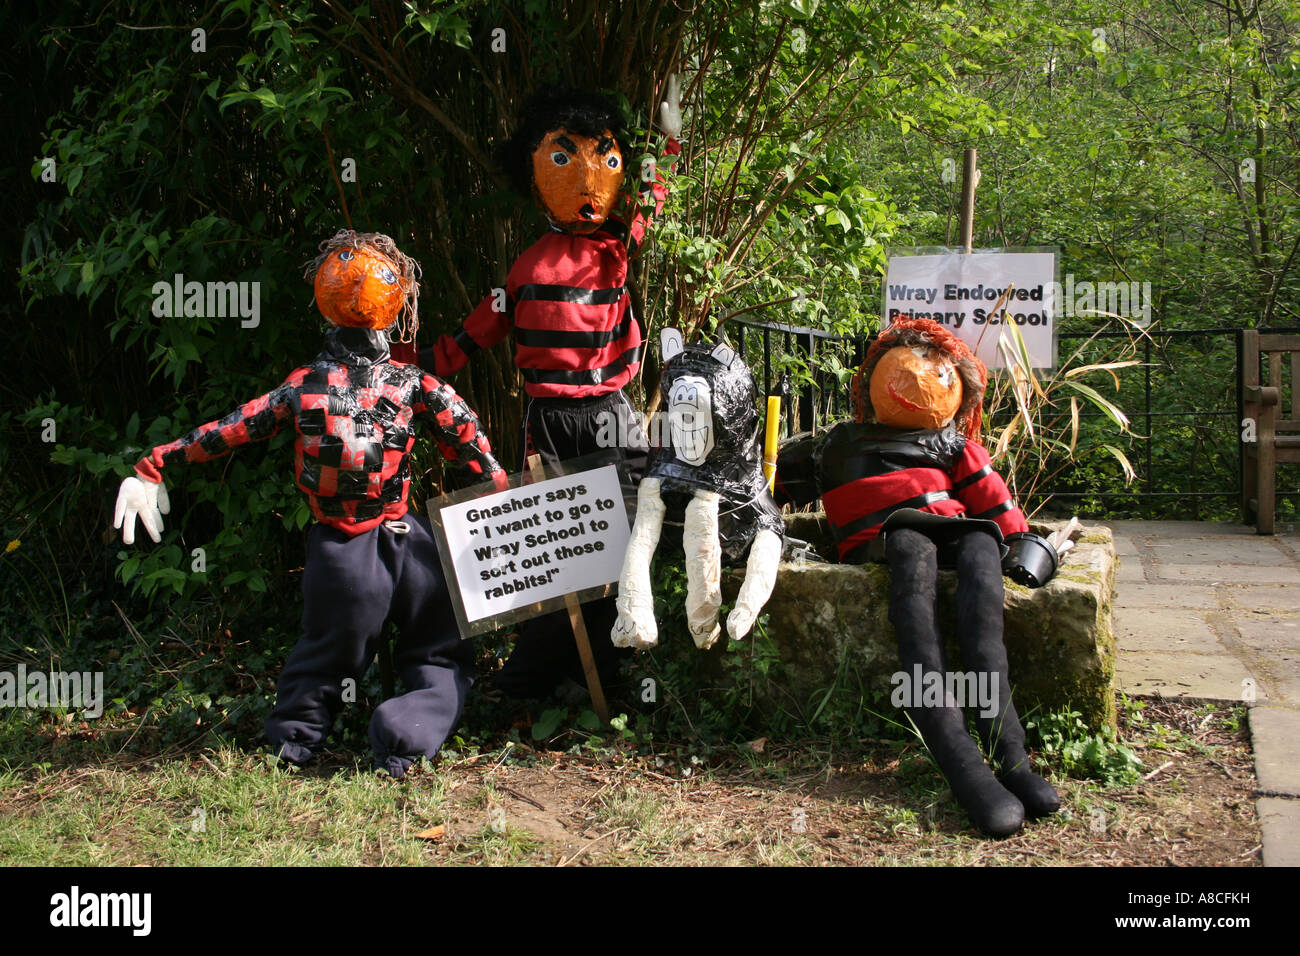 Dennis the Menace, Gnasher y amigos en Wray Espantapájaros Festival, Wray village, Lancashire, Inglaterra. Foto de stock